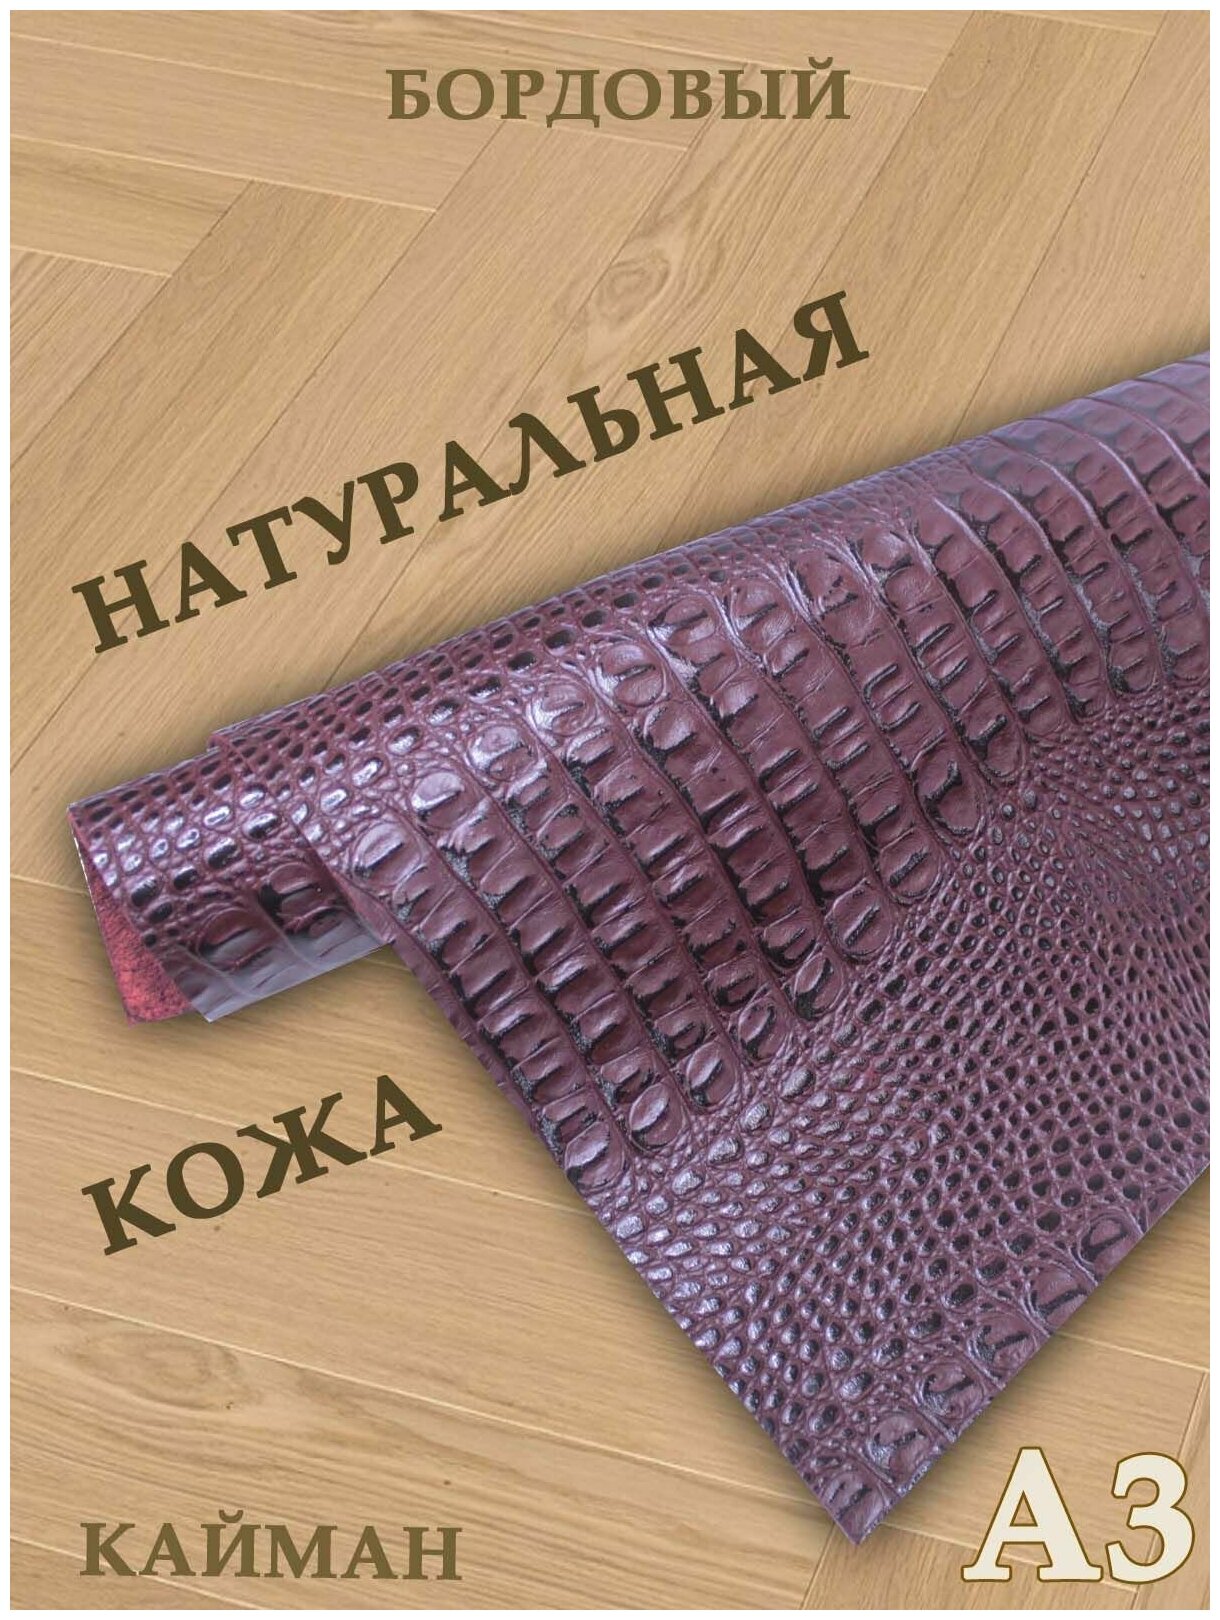 Кожа натуральная/Формат А3/Кожа рептилии Кайман 1,2-1,4мм цв. бордовый крокодил